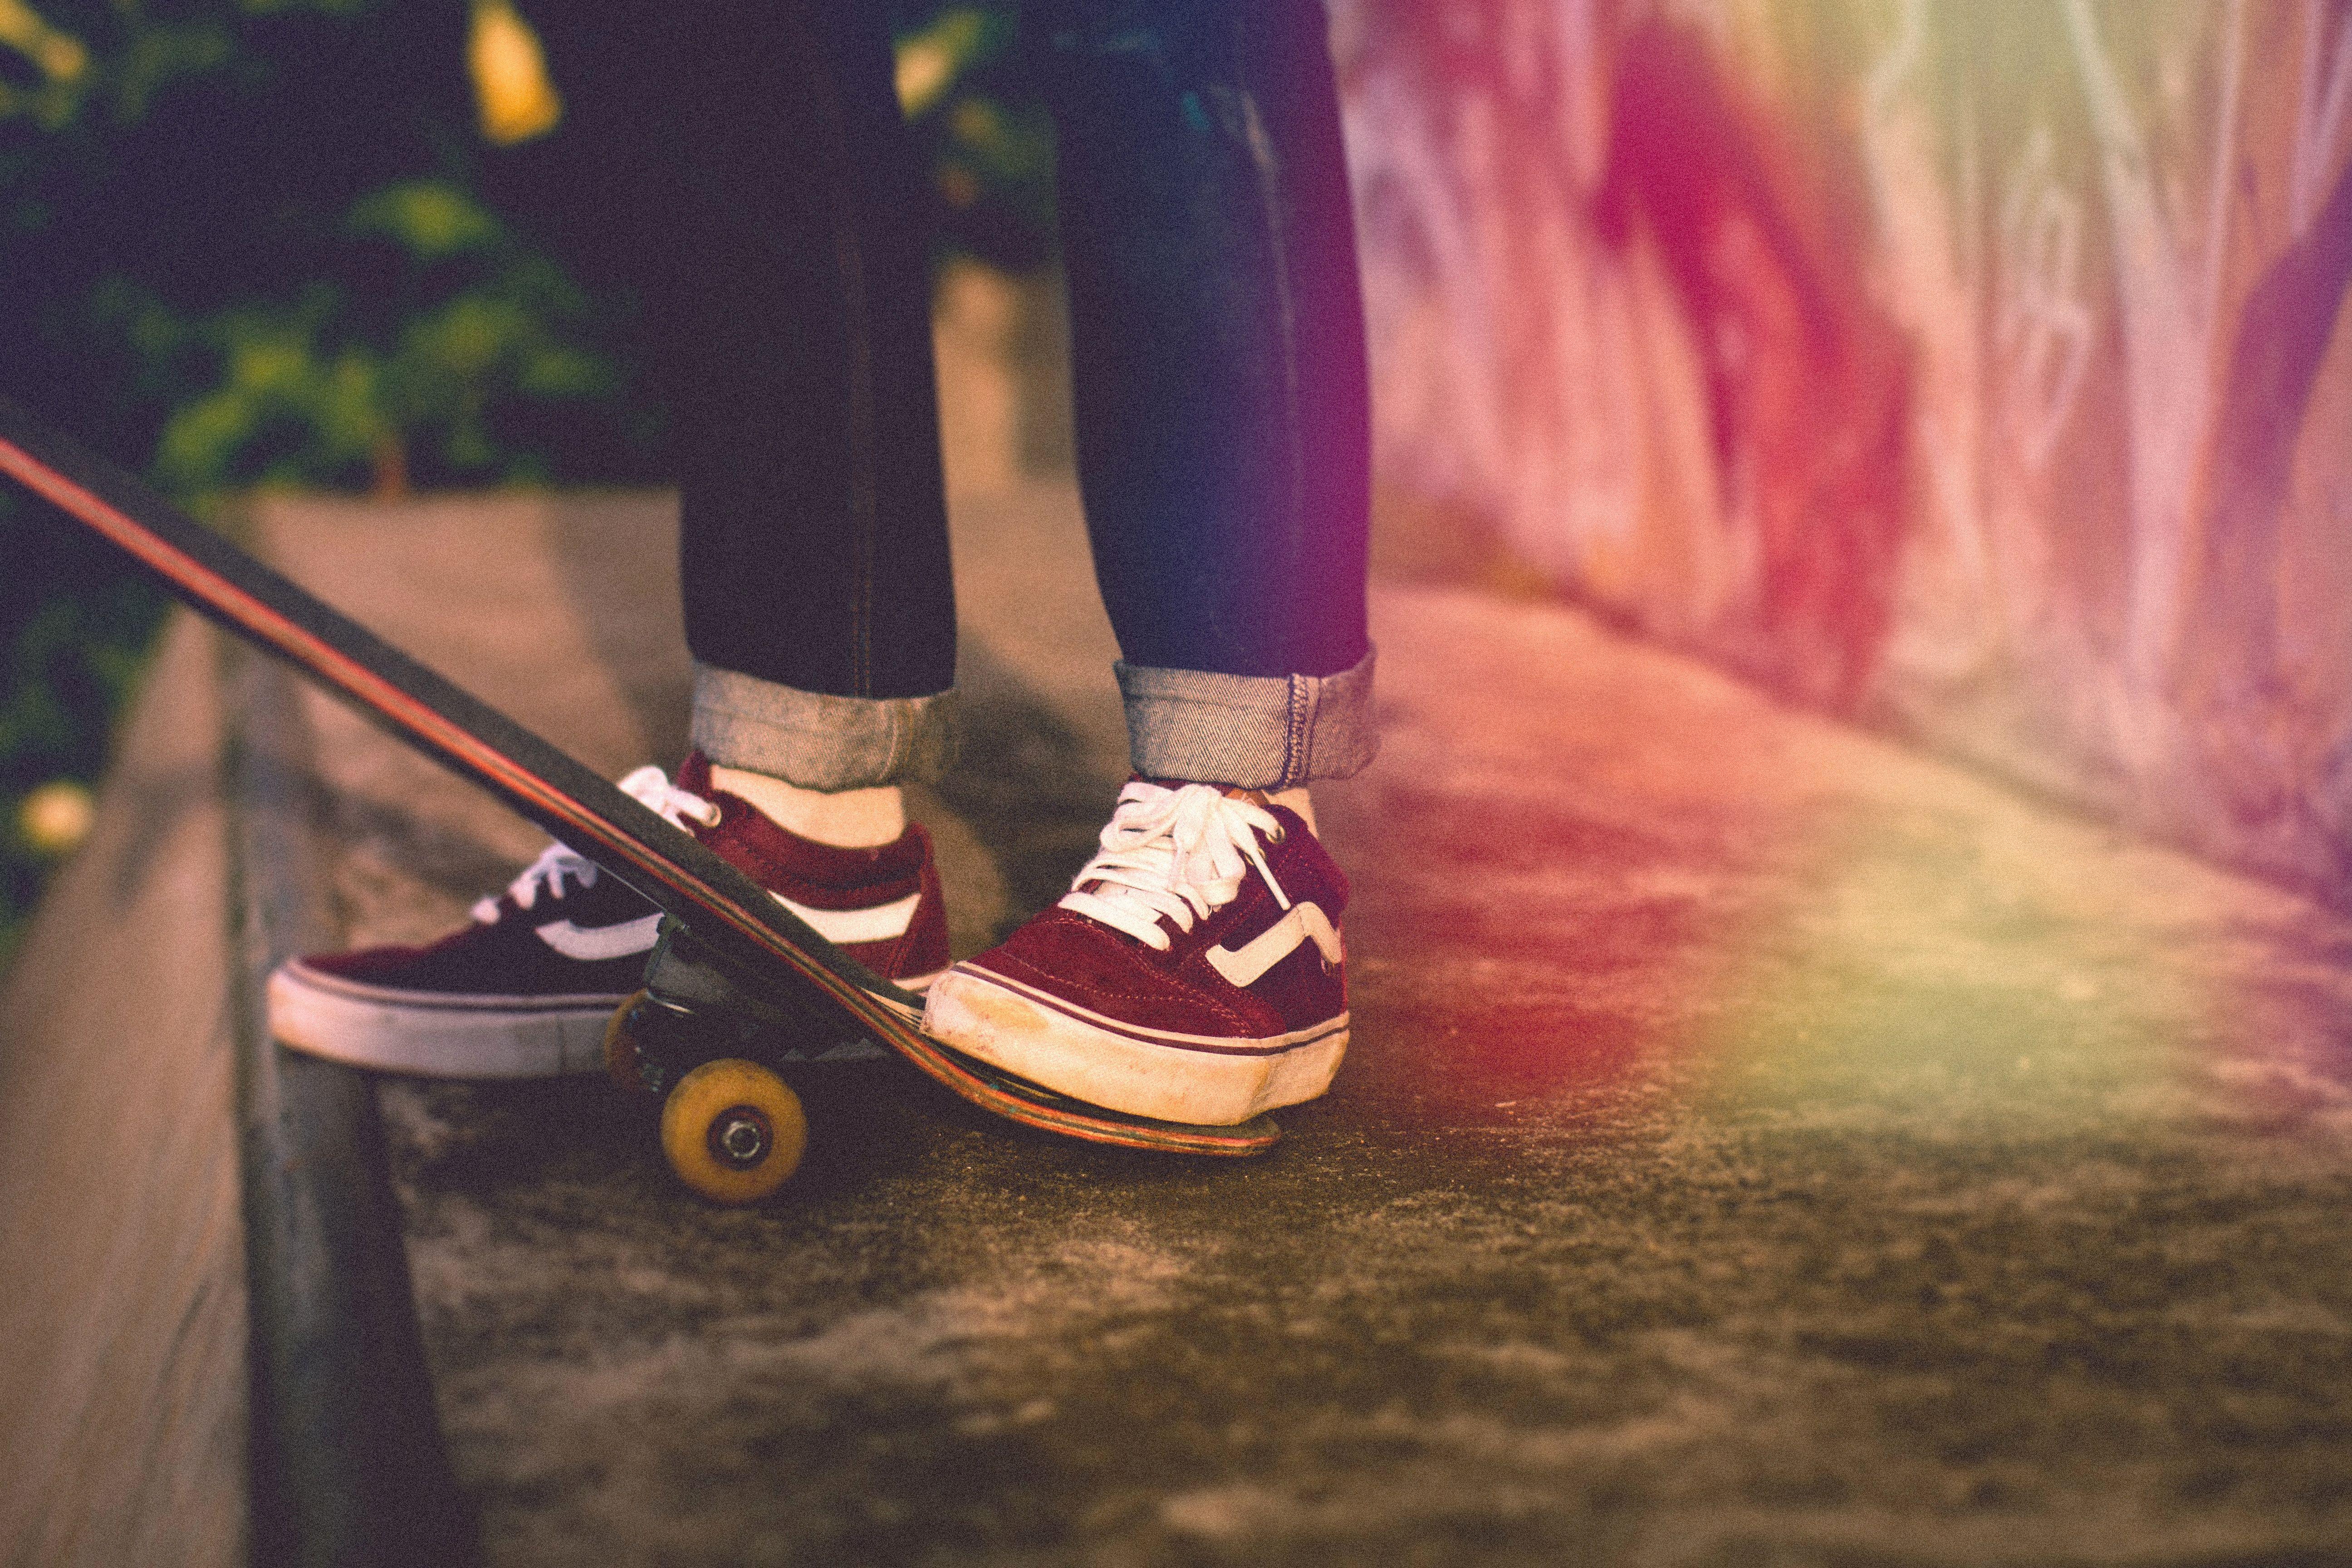 sepatu vans skateboard